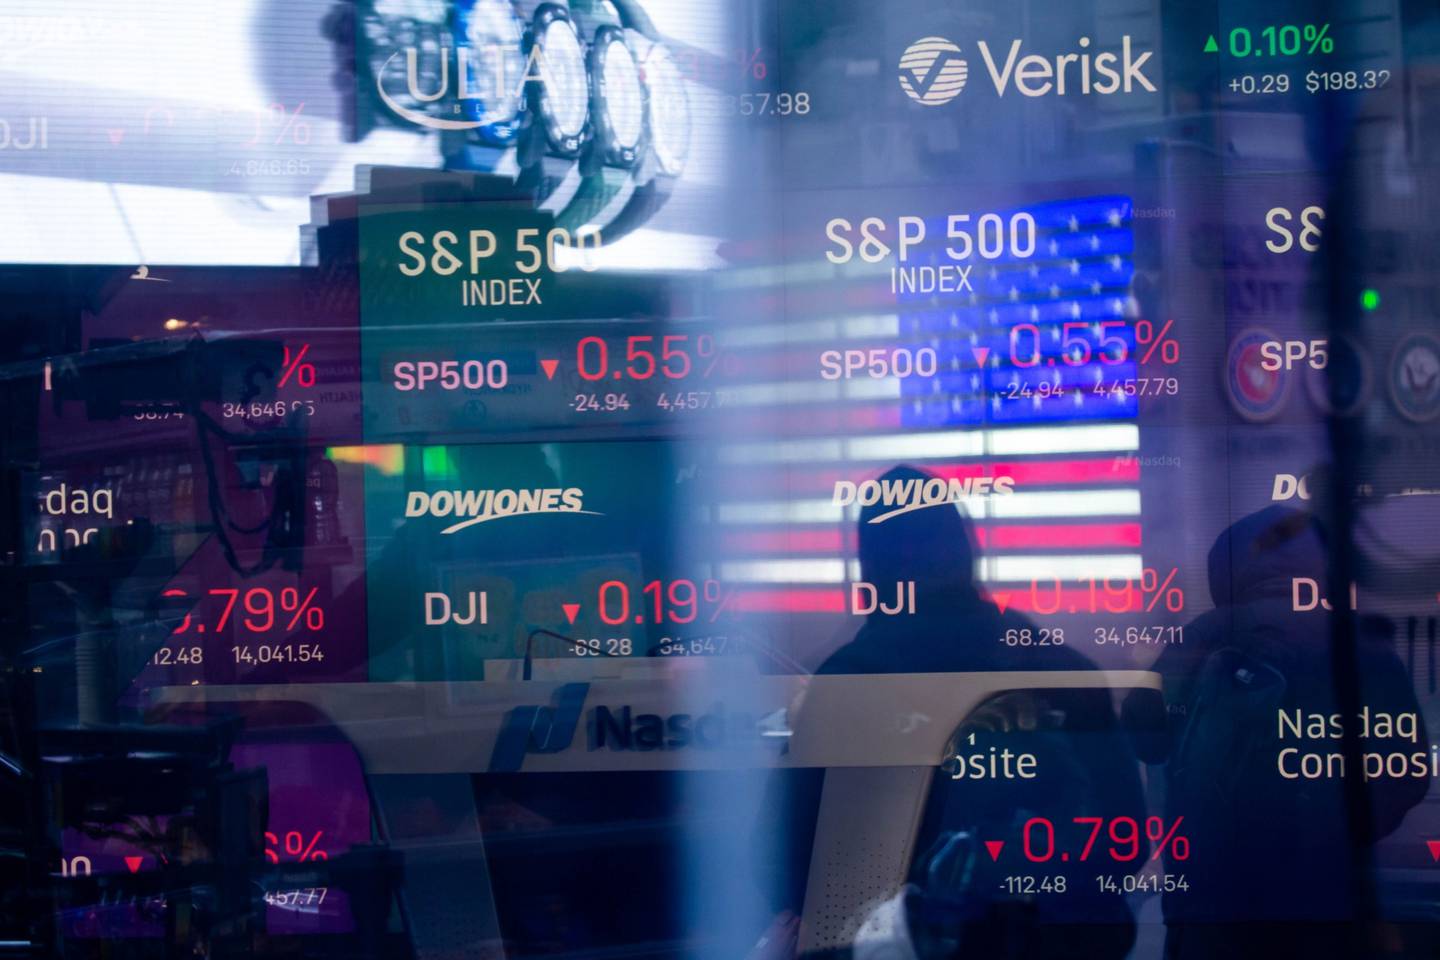 No final de uma semana de fortes oscilações do mercado, o S&P 500 (SPX) retomou seu avanço e interrompeu uma queda de três dias